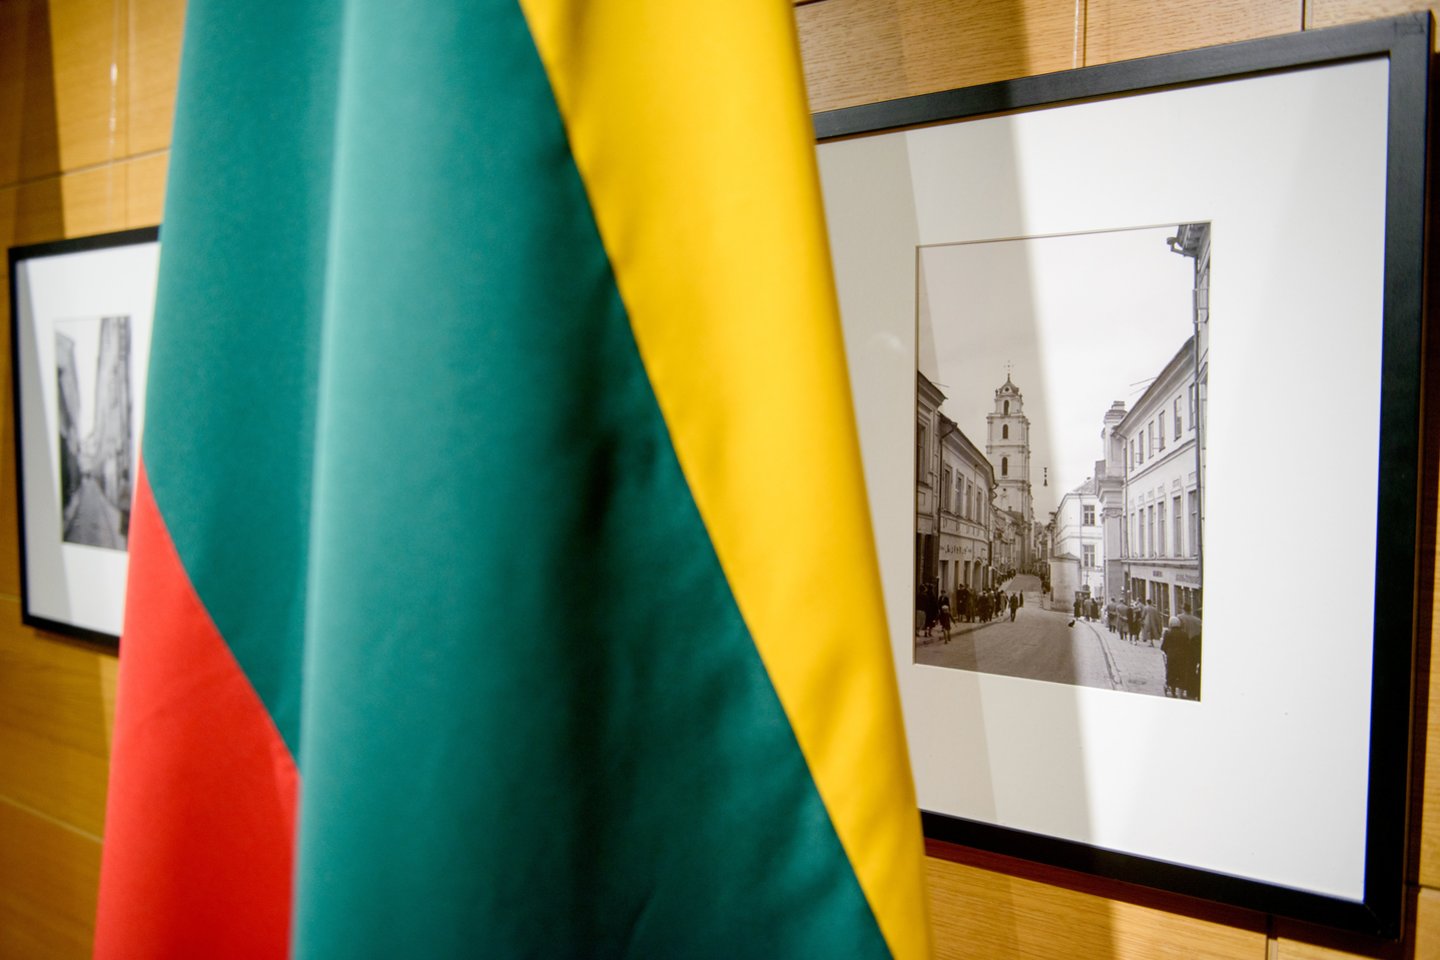 Lietuviškasis viešasis diskursas apie dalies lietuvių dalyvavimą Holokauste ir tai, kas turėtų būti už tai atsakingas bei kokia turėtų būti toji atsakomybė, malasi toje pačioje aklavietėje kaip ir prieš tris dešimtmečius.<br>J.Stacevičiaus nuotr.